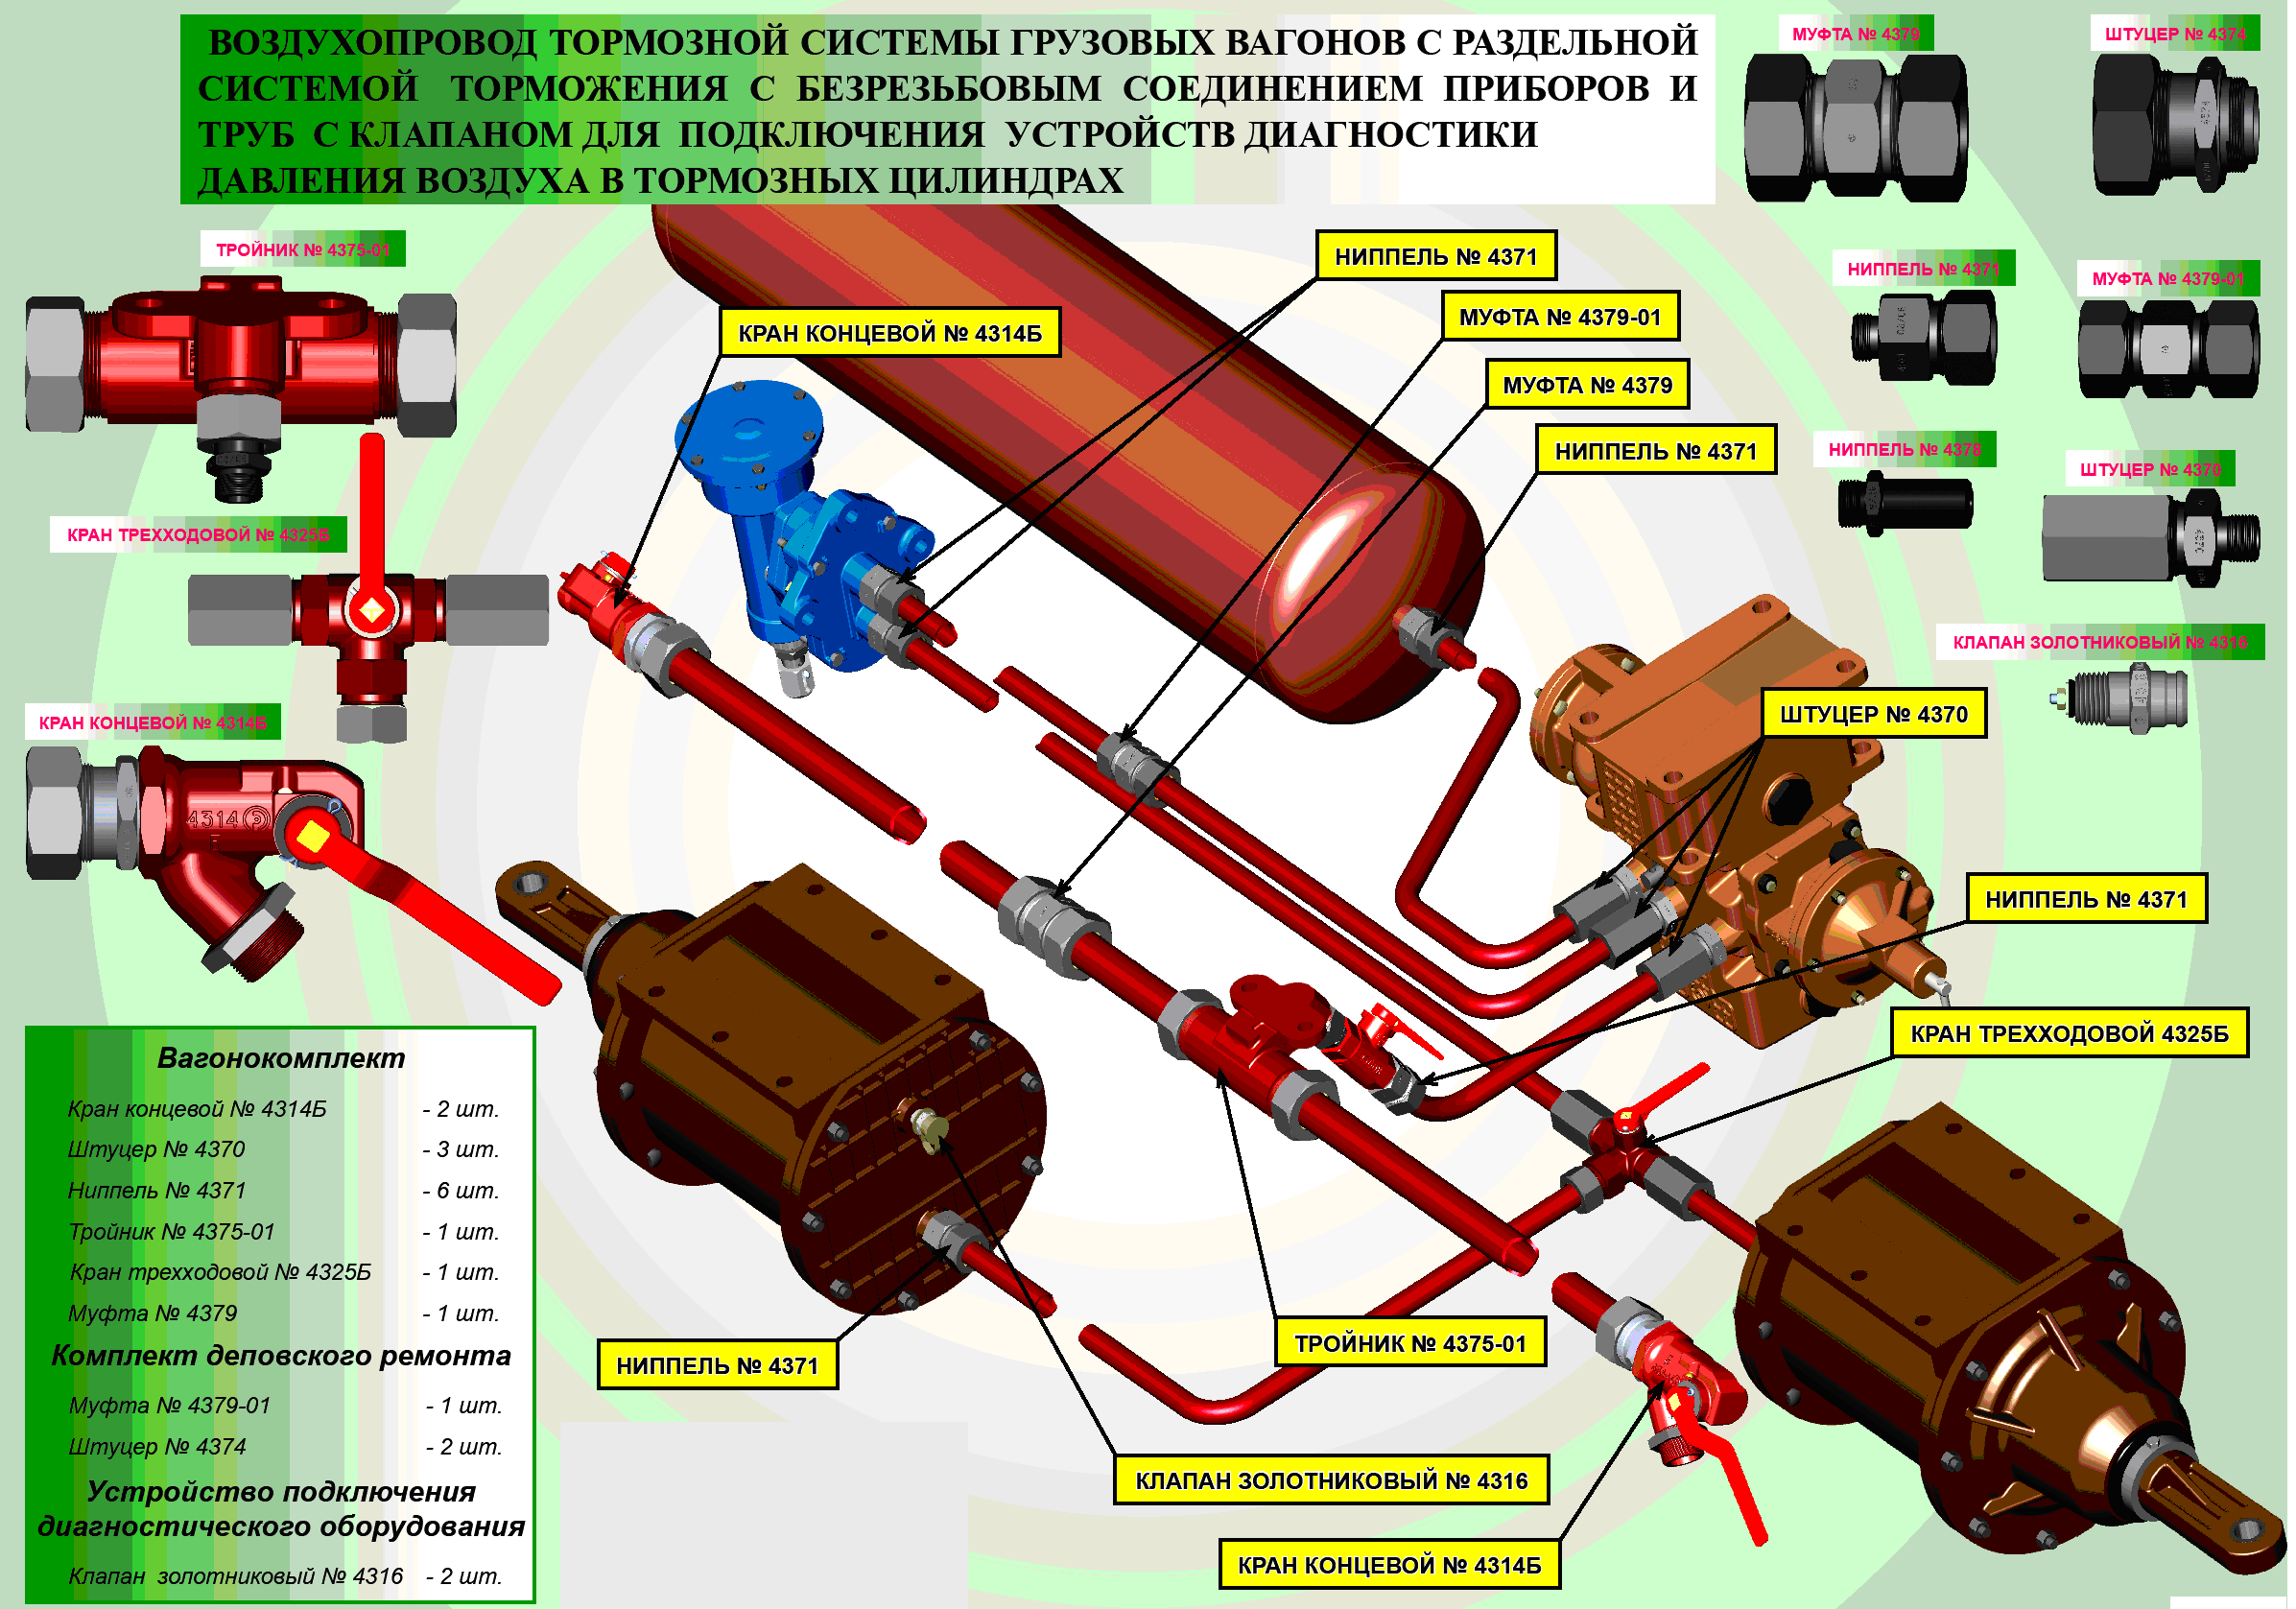 Клапана подачи инертного газа установленные на грузовых танках перед началом грузовых операций